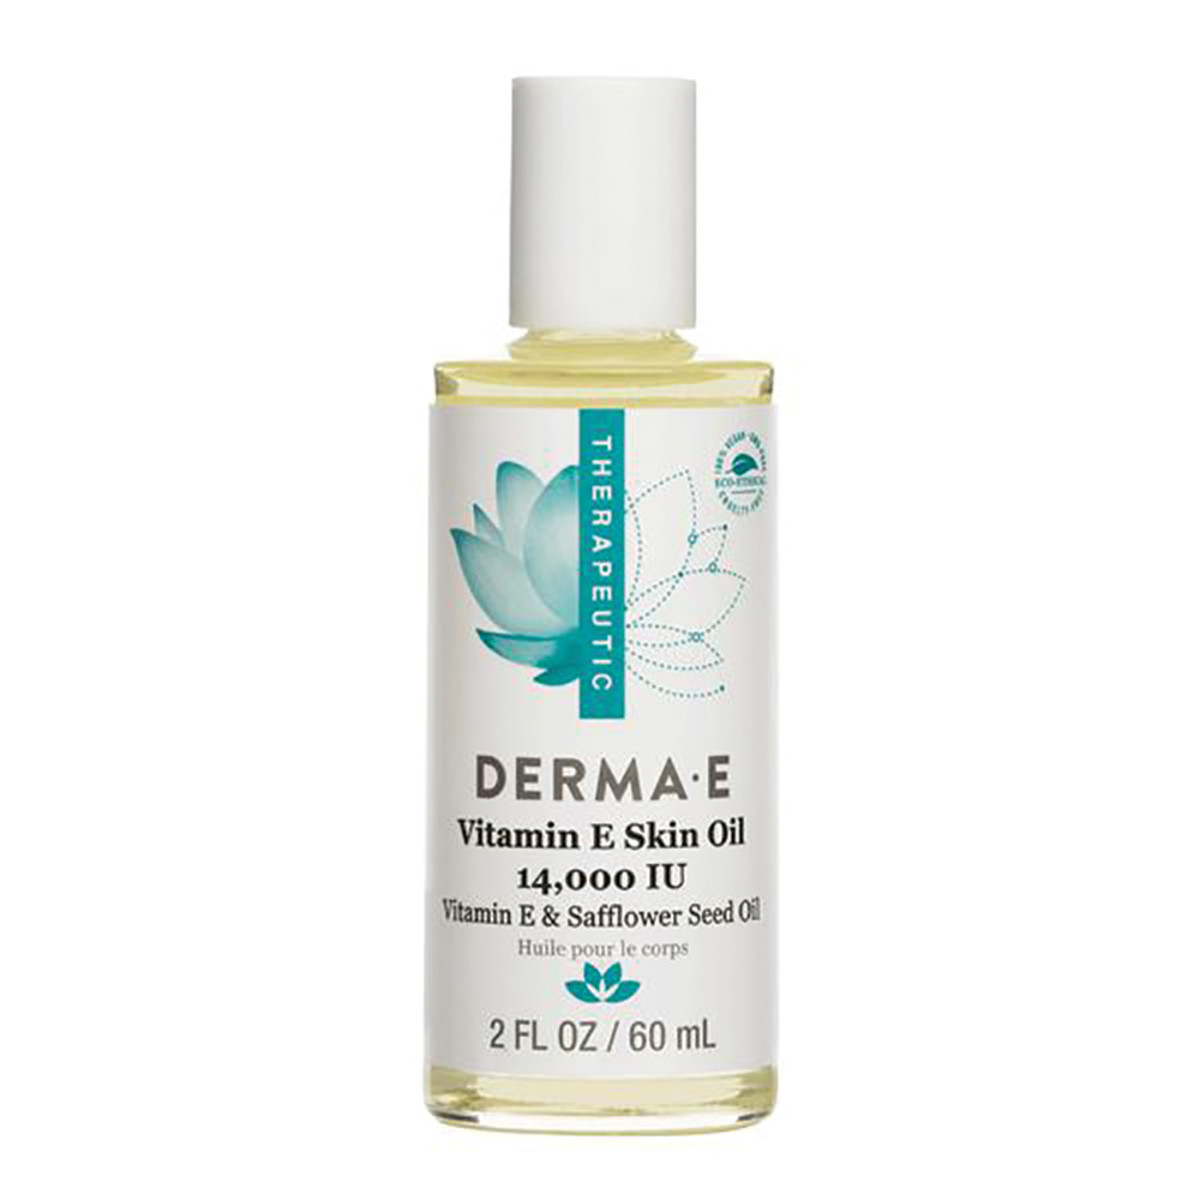 DermaE Therapeutic Vitamin E Skin Oil (14,000IU) with Vitamin E & Safflower Seed Oil 60ml